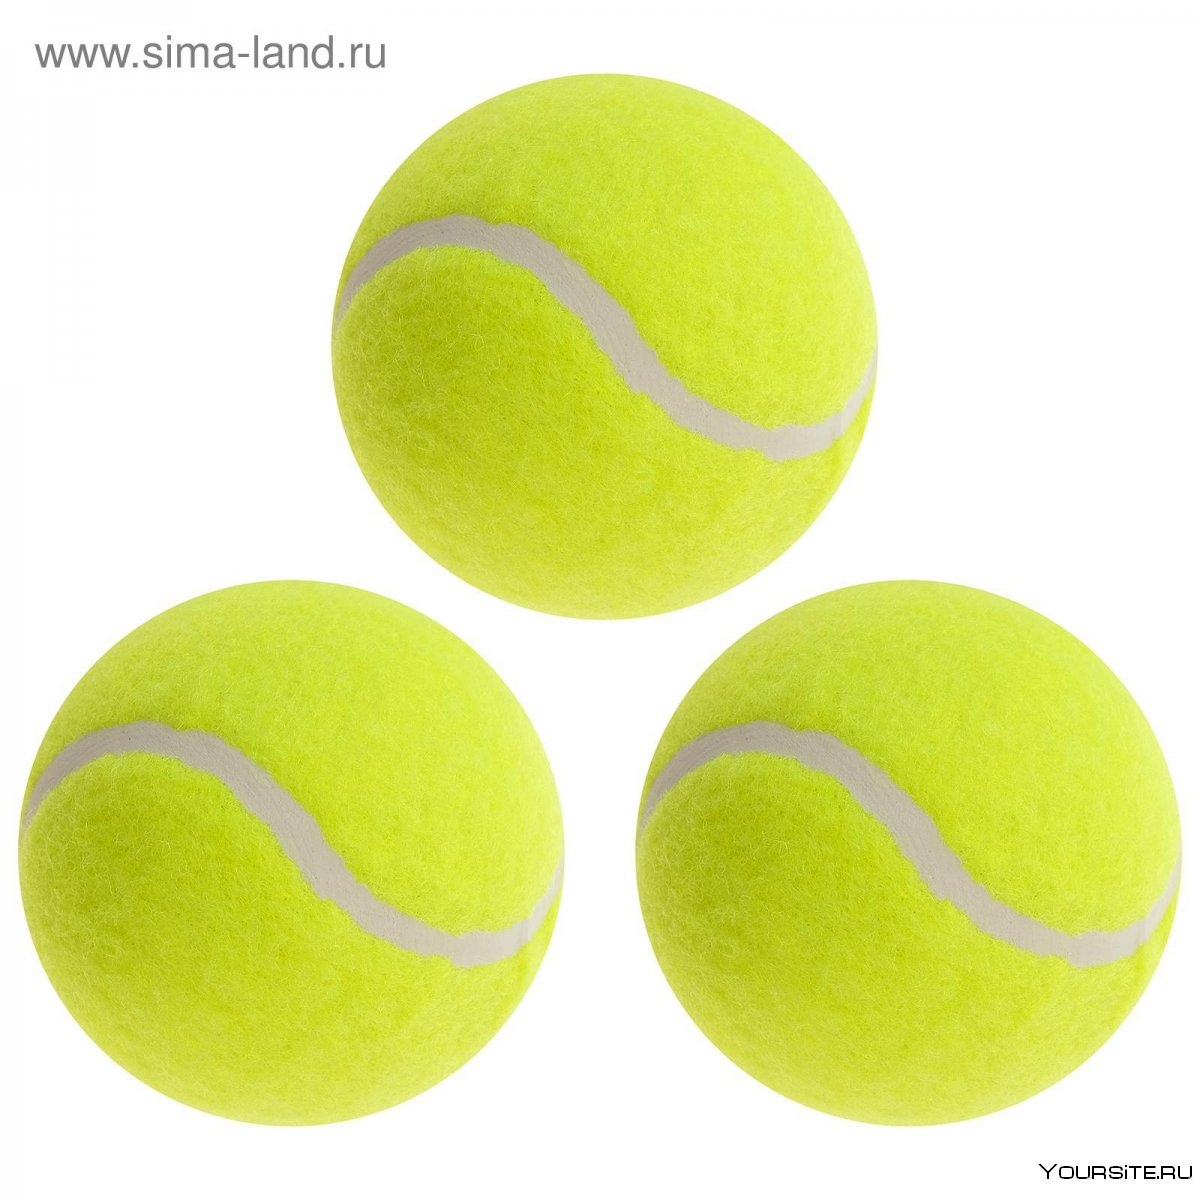 Что внутри теннисного мяча